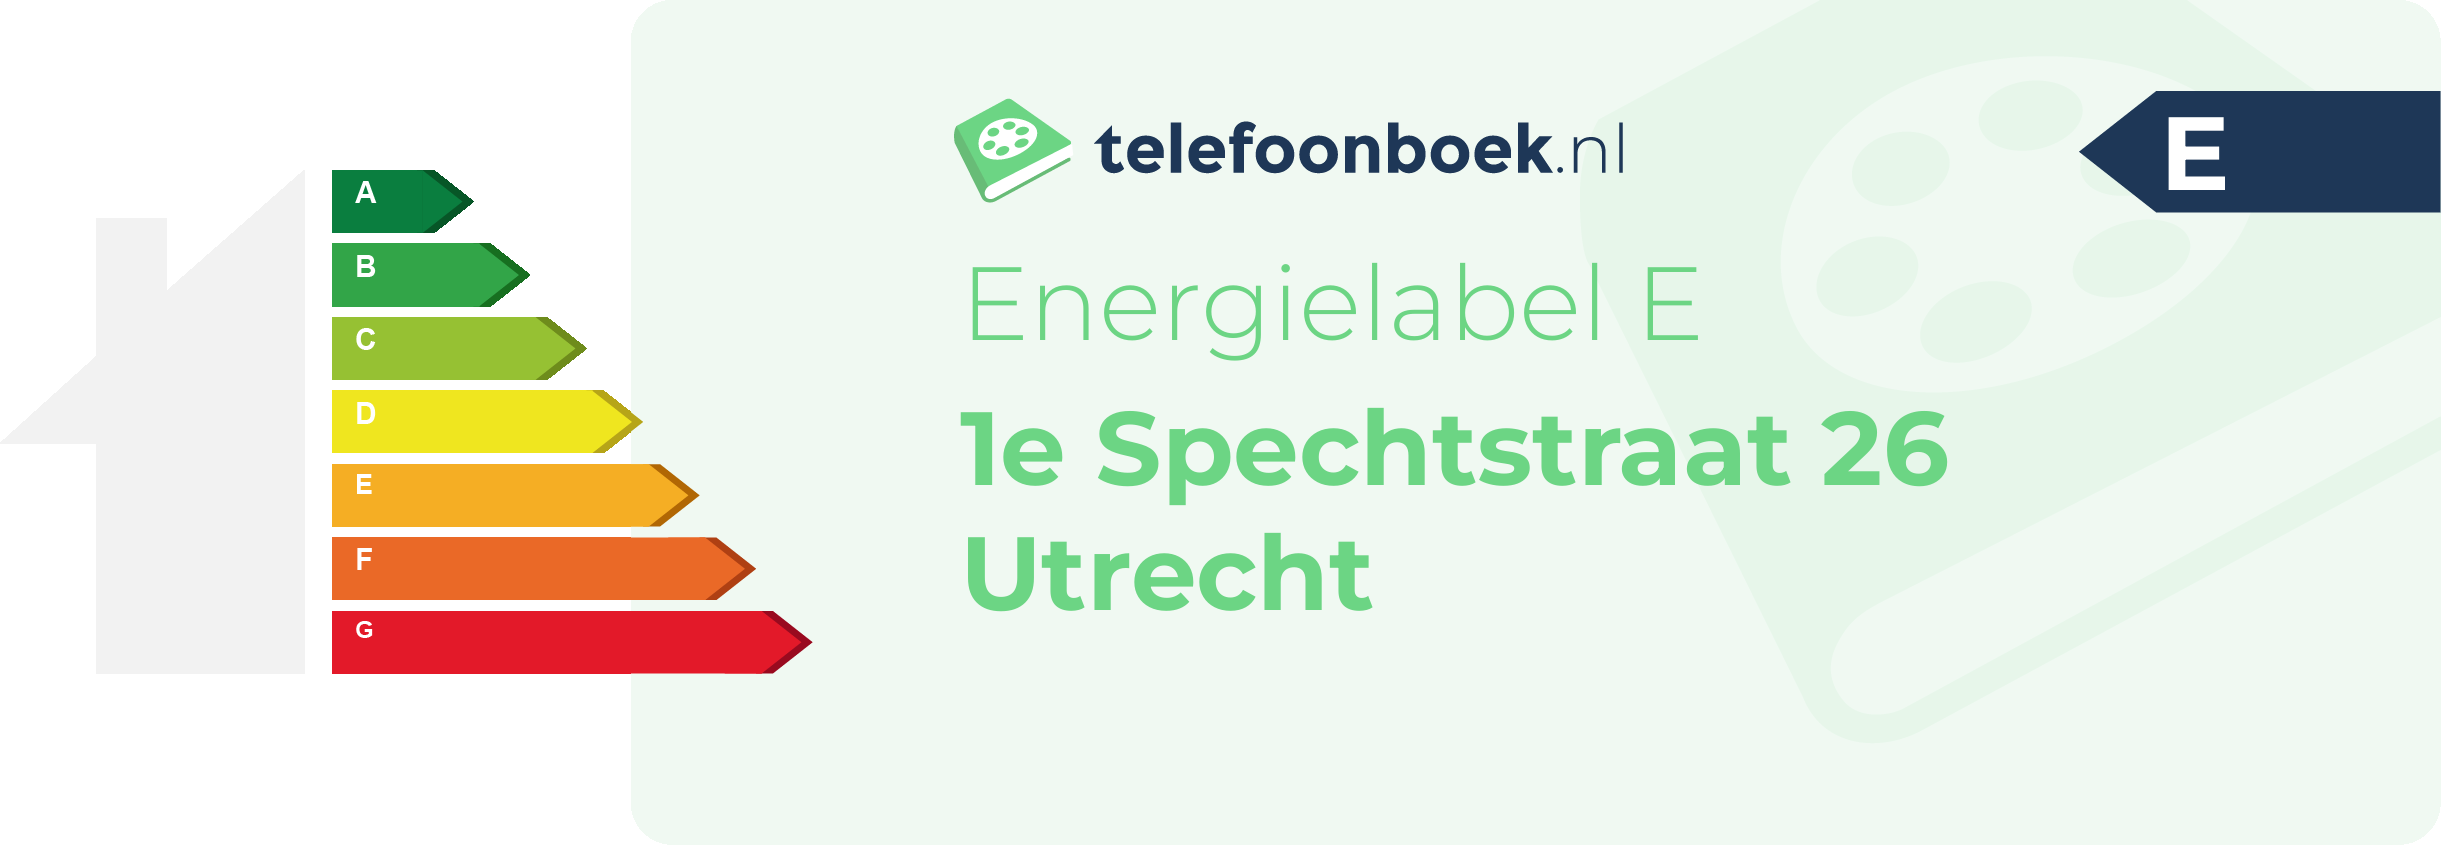 Energielabel 1e Spechtstraat 26 Utrecht